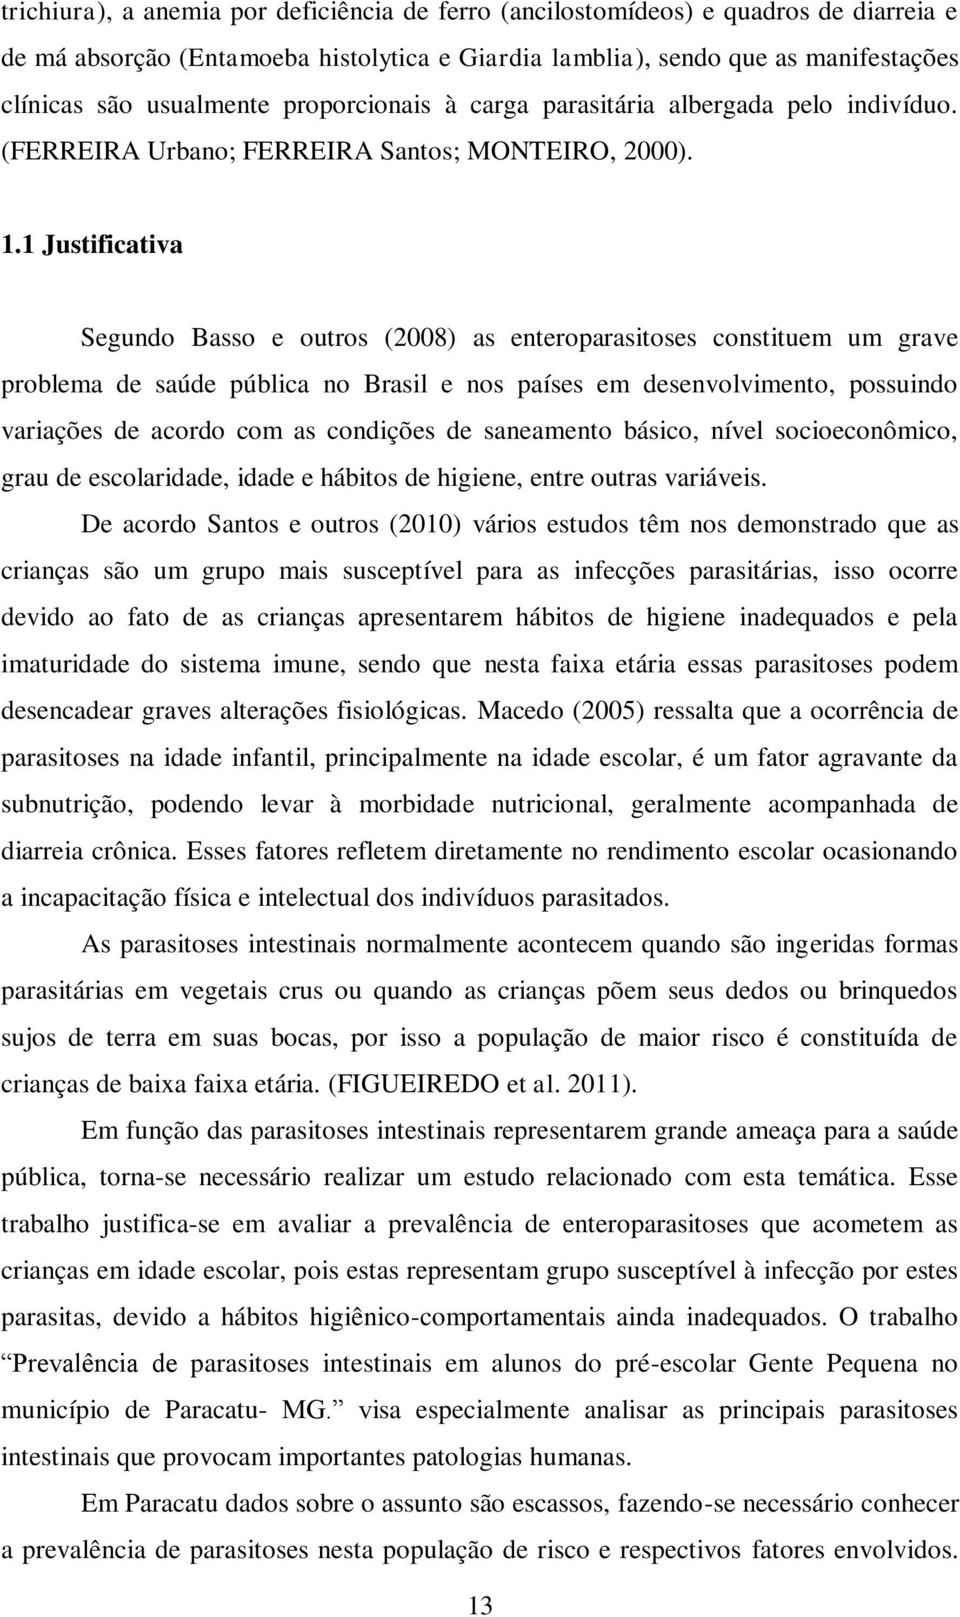 1 Justificativa Segundo Basso e outros (2008) as enteroparasitoses constituem um grave problema de saúde pública no Brasil e nos países em desenvolvimento, possuindo variações de acordo com as